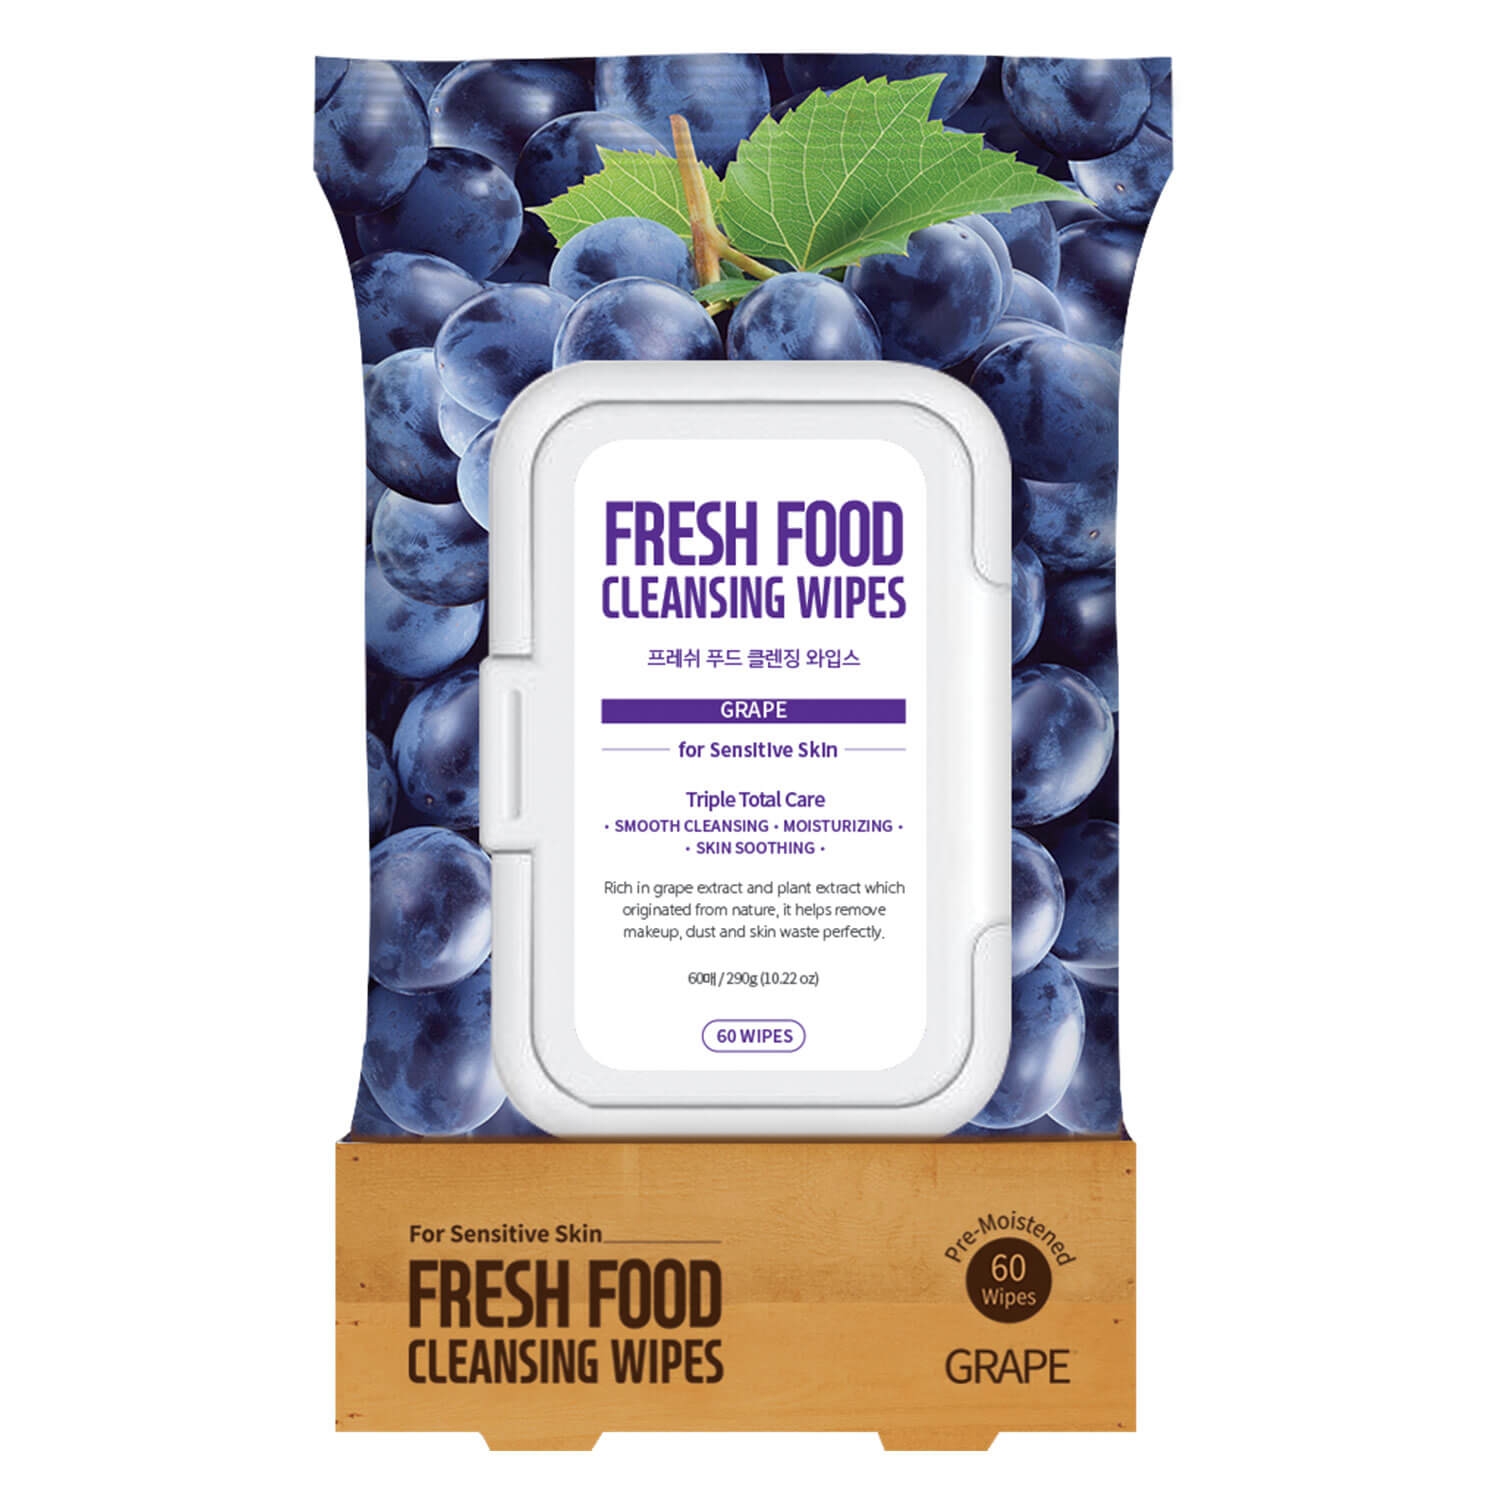 Produktbild von Fresh Food - Cleansing Wipes Grape